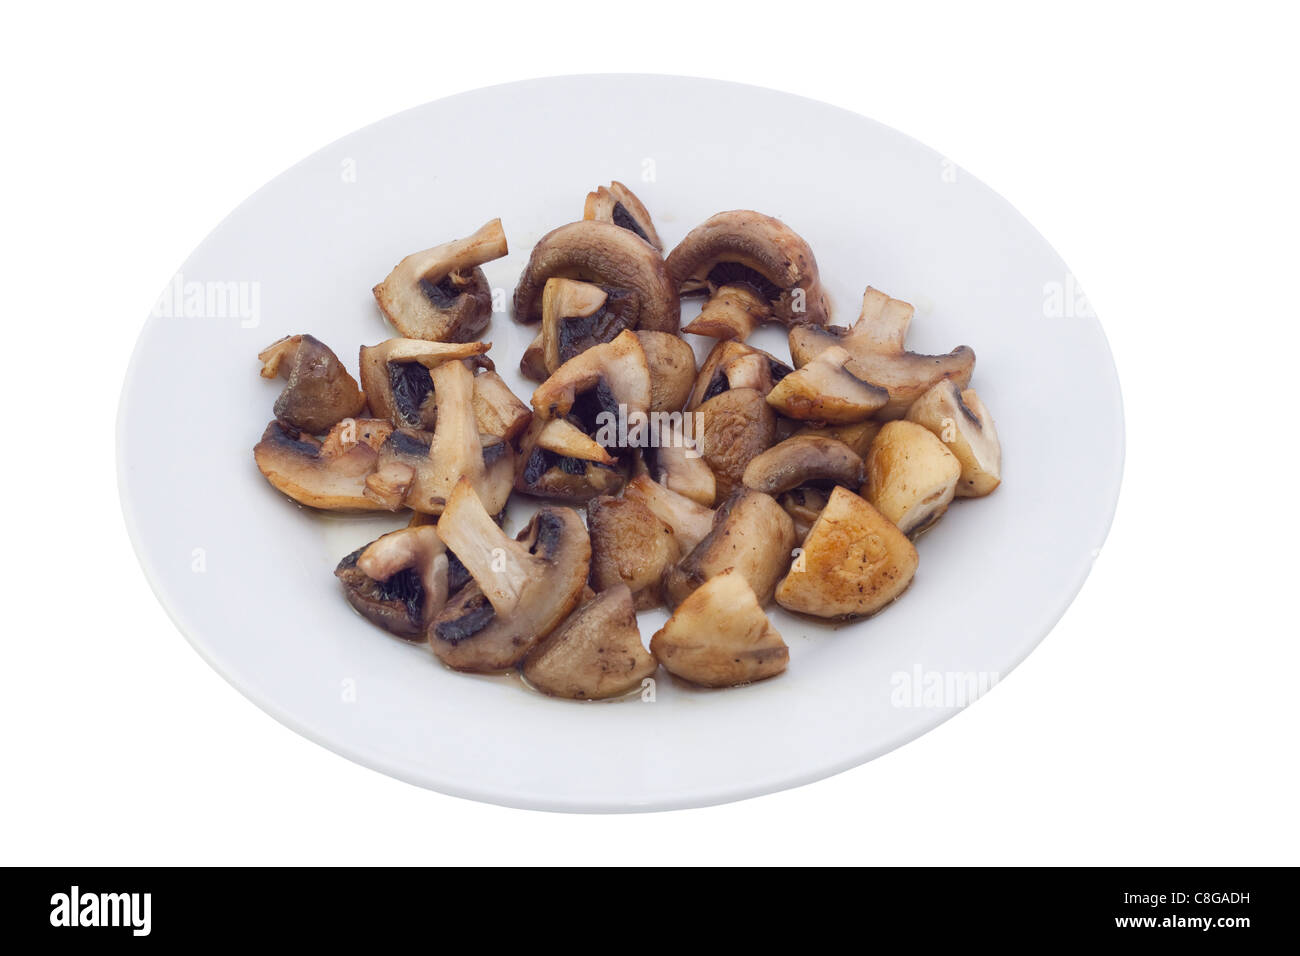 Fried mushrooms. Image is isolated on white background. Stock Photo